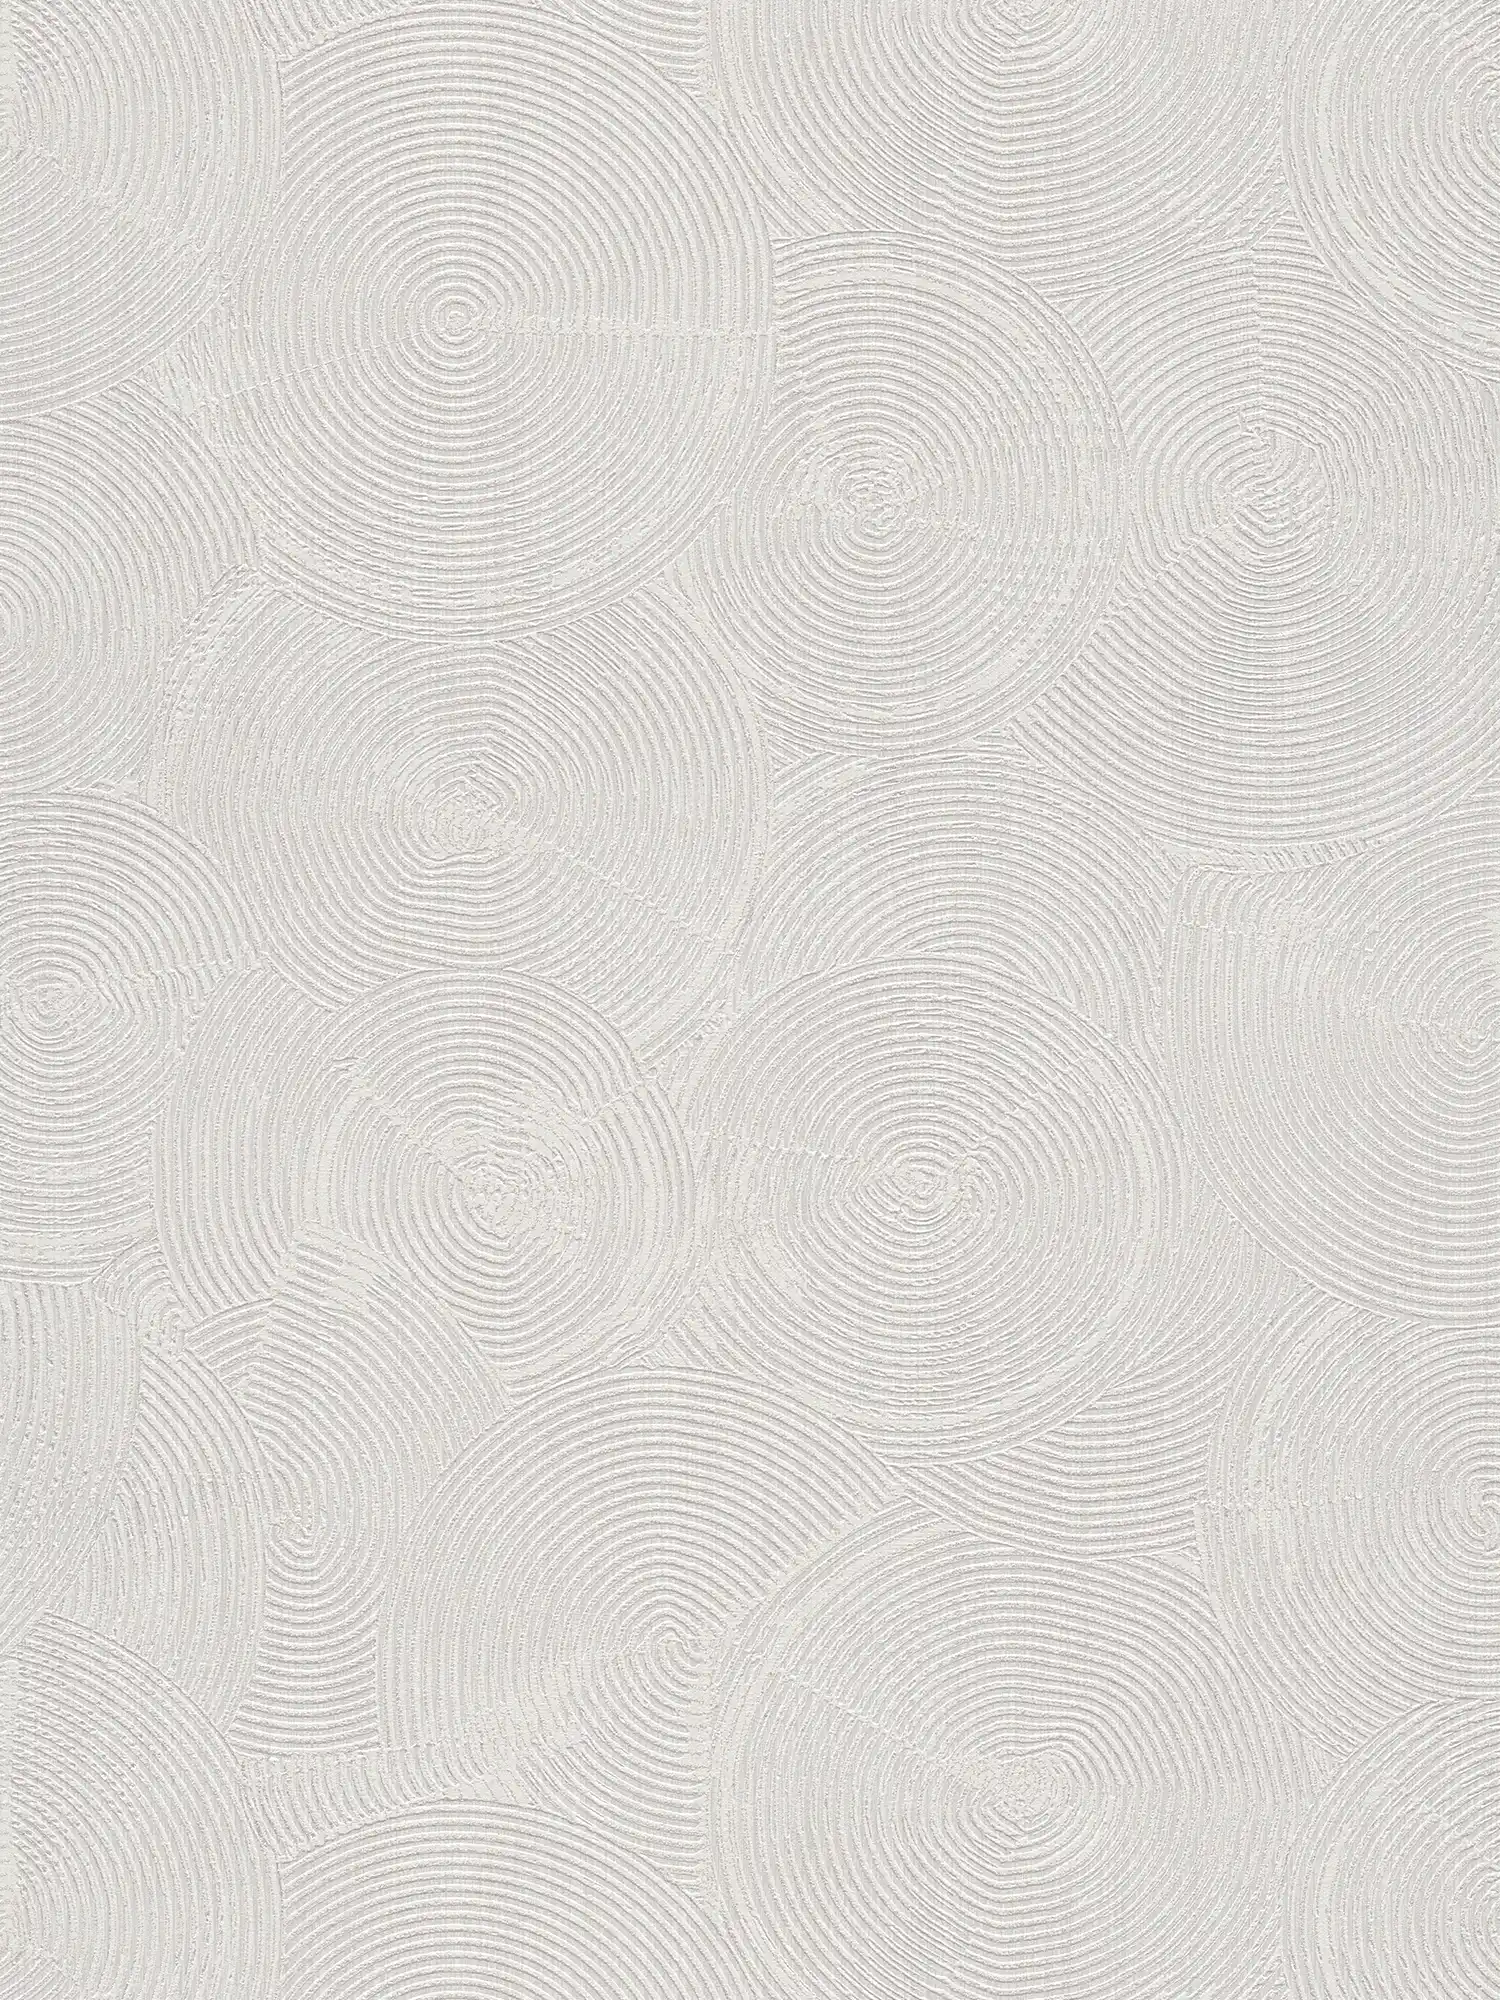 Papier peint à l'aspect plâtreux moderne & accents métalliques - gris, métallique, blanc
